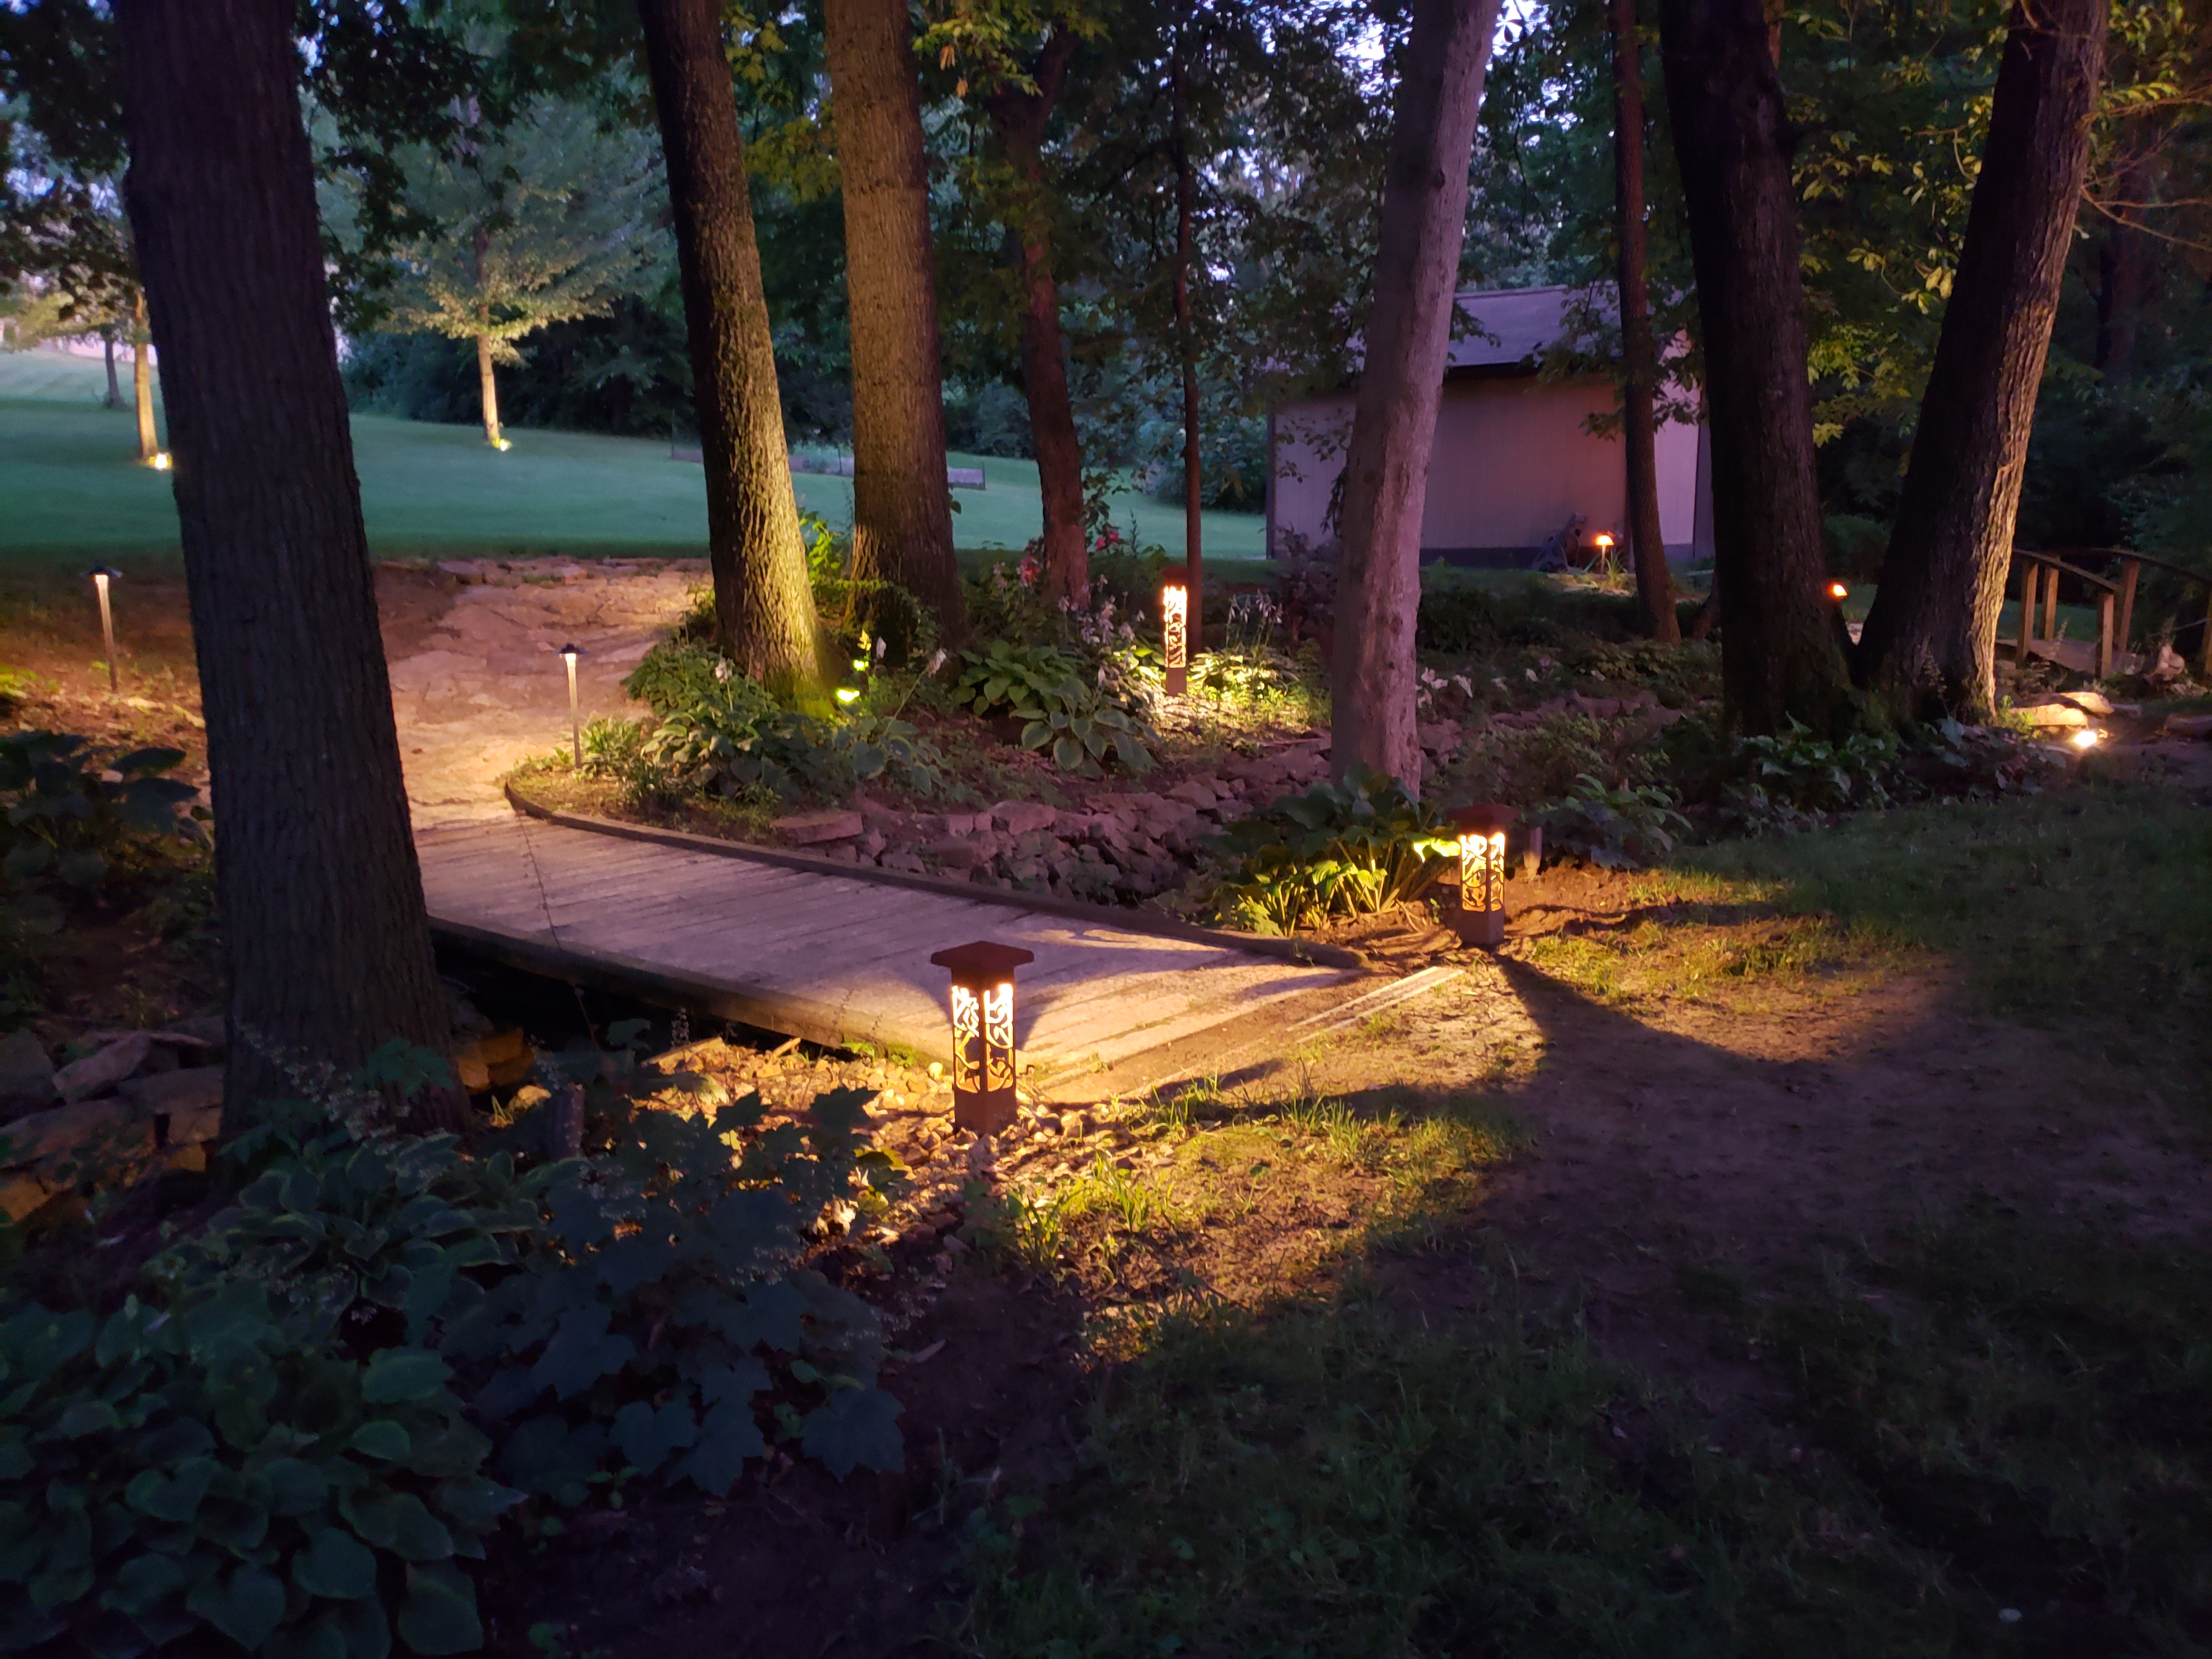 lighting along an outdoor garden area